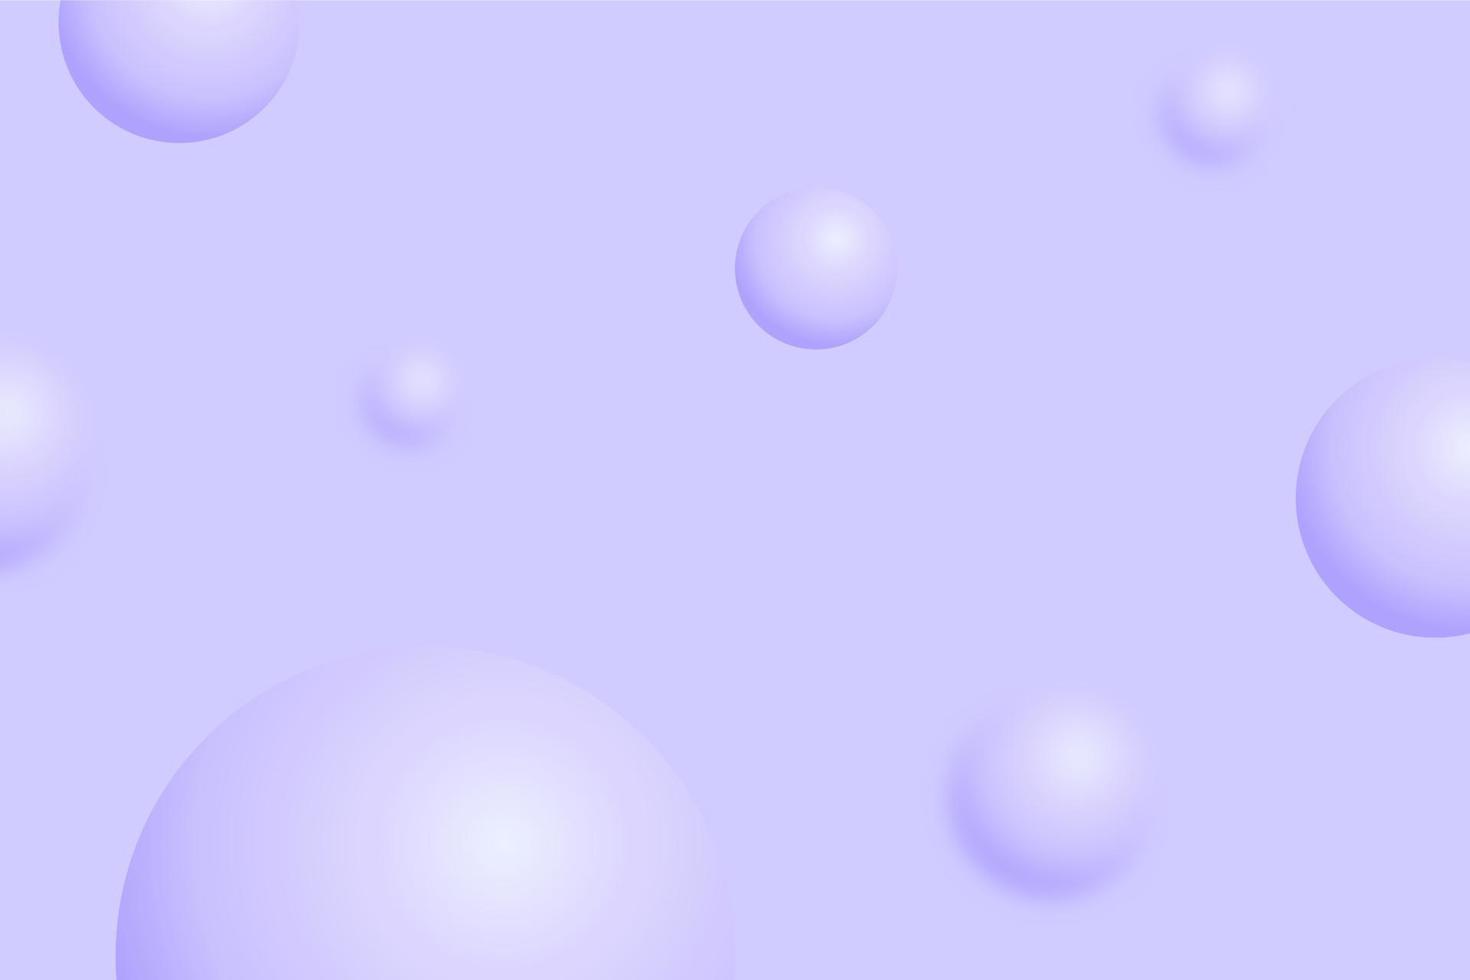 Fondo de color lavanda de esfera 3d. bolas abstractas voladoras, formas geométricas redondas con brillo brillante y degradado. plantilla de diseño lila o púrpura. telón de fondo de arte minimalista moderno con círculo, orbe, burbujas vector